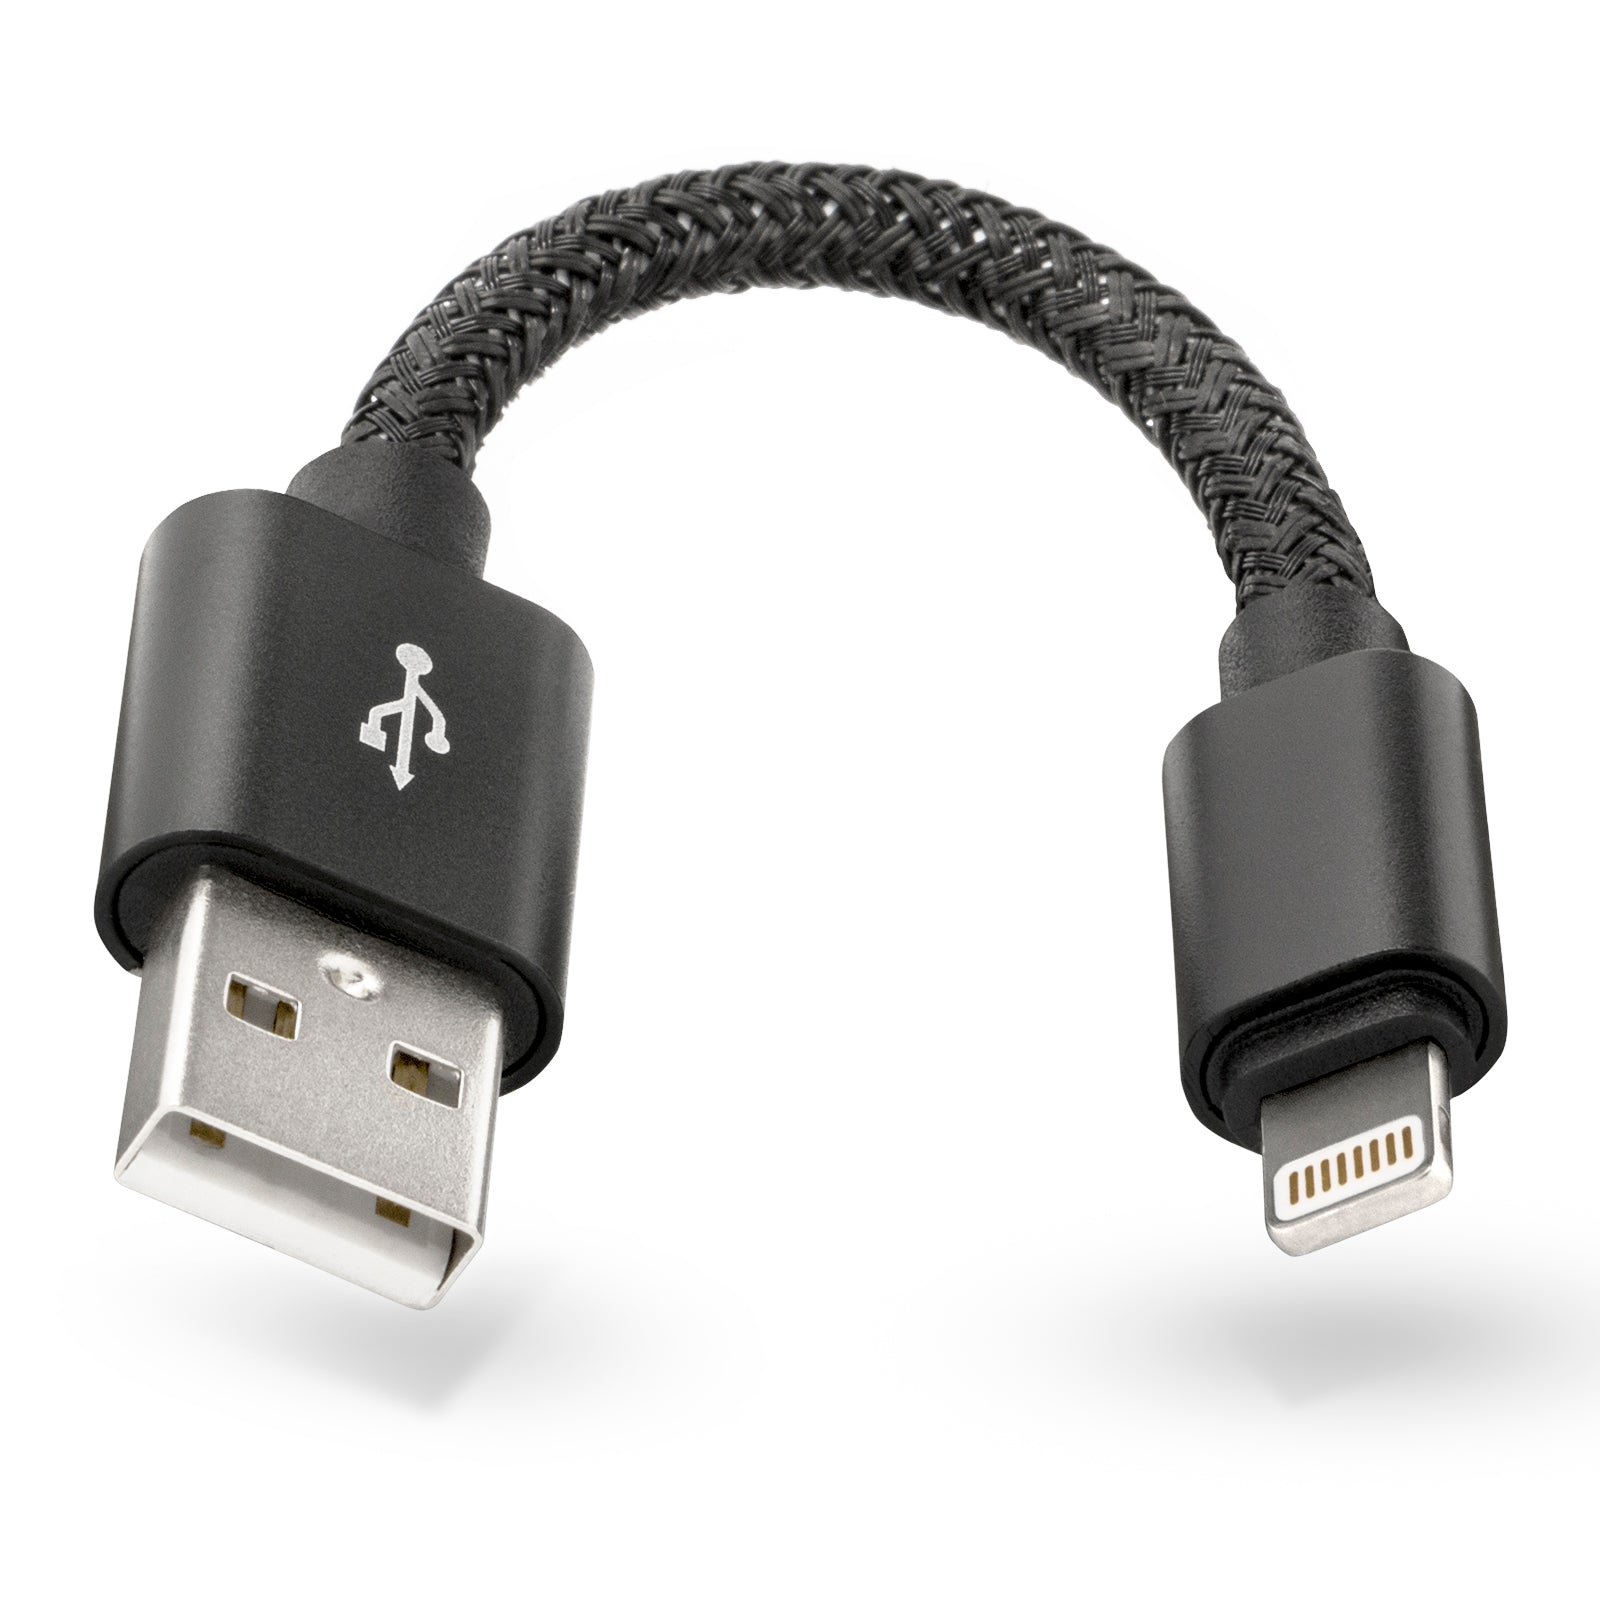 12cm Lade Daten Kabel Nylon 2.0 Anschluss Stecker für Apple iPhone iPad